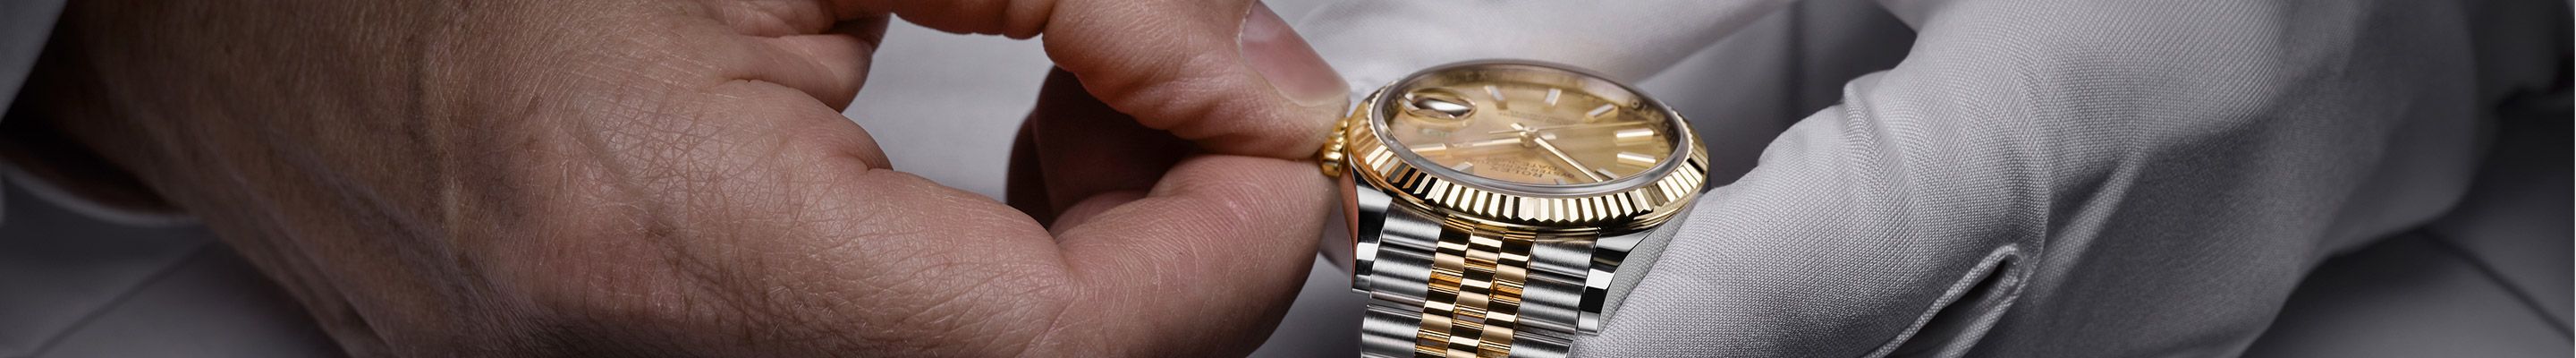 Wartung und Reparatur Ihrer Rolex Uhr bei Gadoro Stilreich